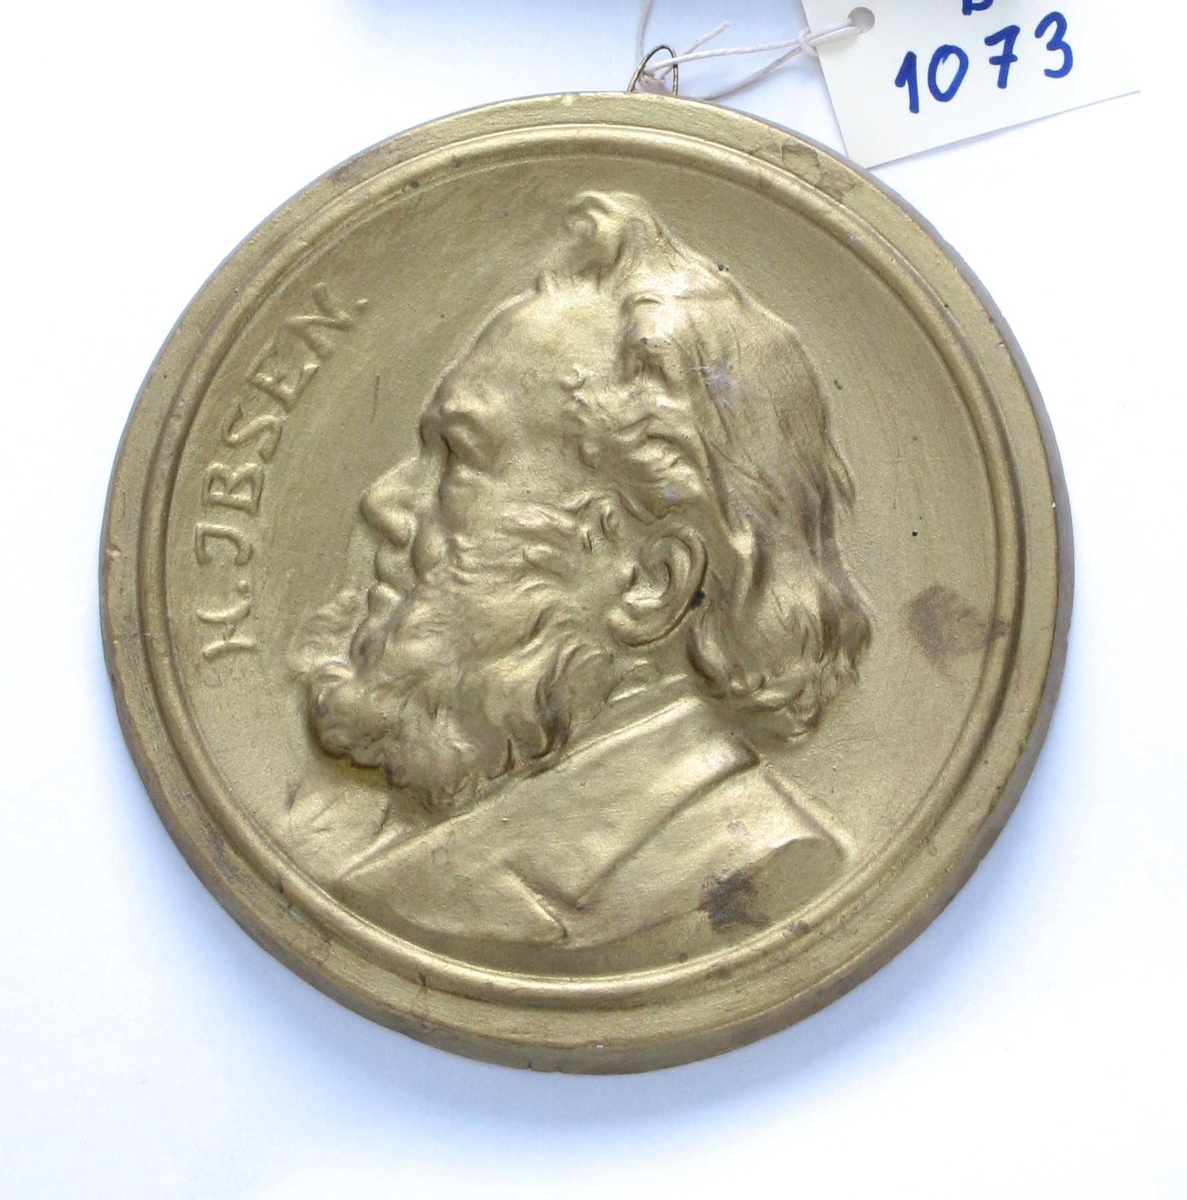 Sirkulær medaljong med   profilportrett, venstrevendt,  tekst langs venstre kant: